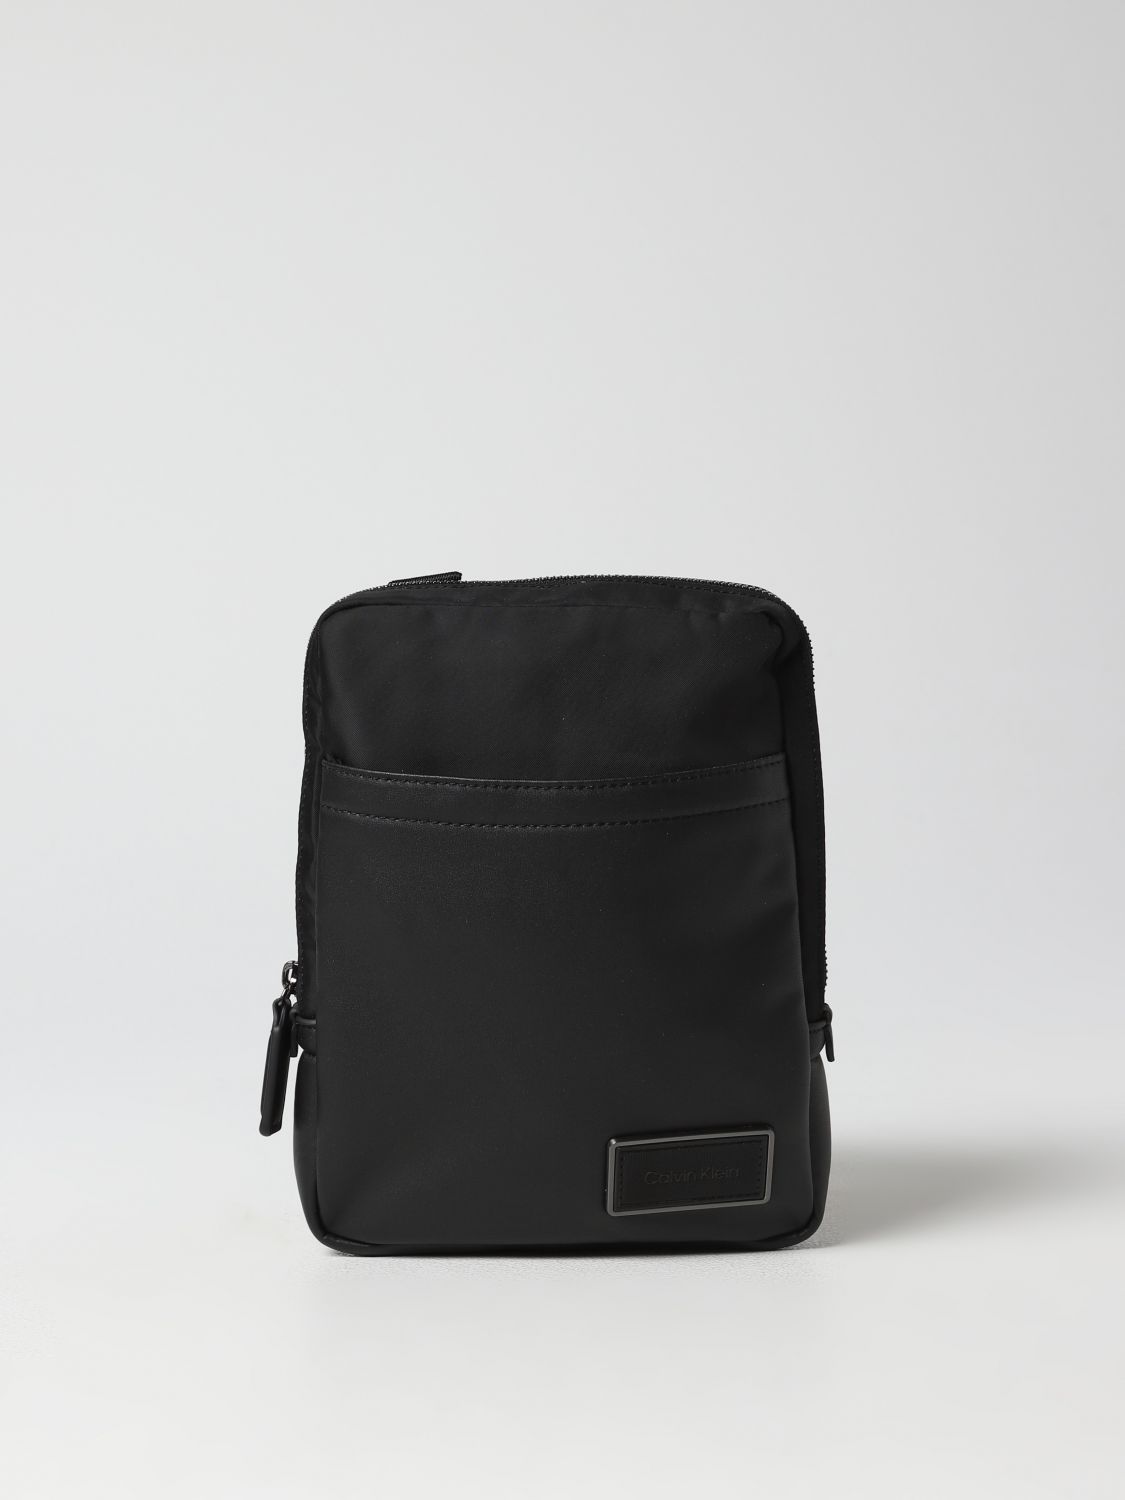 Calvin Klein Black Men's Shoulder Bag - Men's